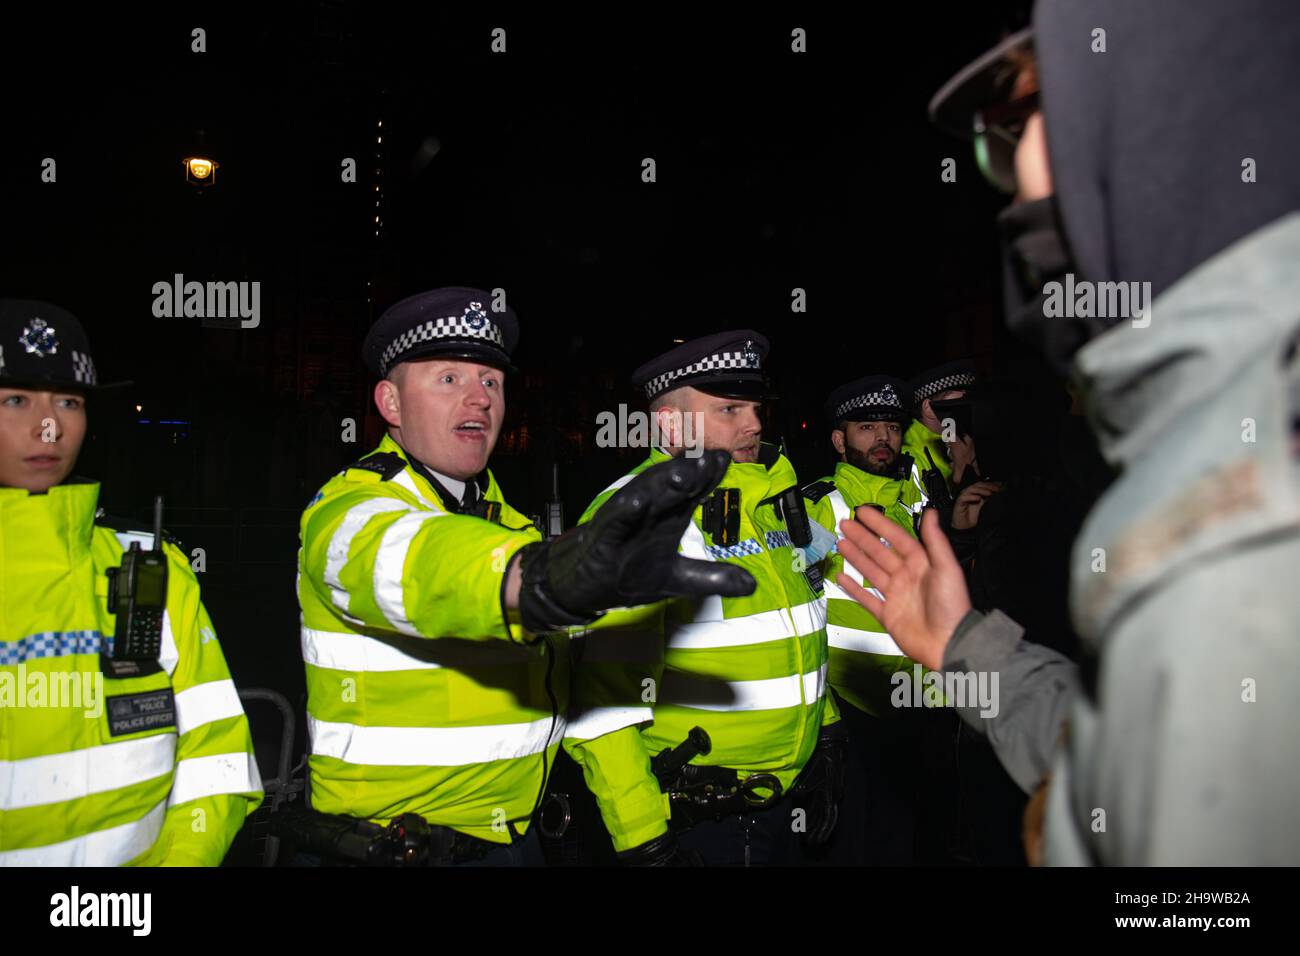 Londres, Inglaterra, Reino Unido 8th de diciembre de 2021 Cientos de manifestantes se reúnen en Parliament Square en oposición al proyecto de ley sobre la policía, el delito, las sentencias y los tribunales, con acalorados intercambios entre la policía y los manifestantes a medida que se acercaron las noches. Crédito: Denise Laura Baker/Alamy Live News Foto de stock